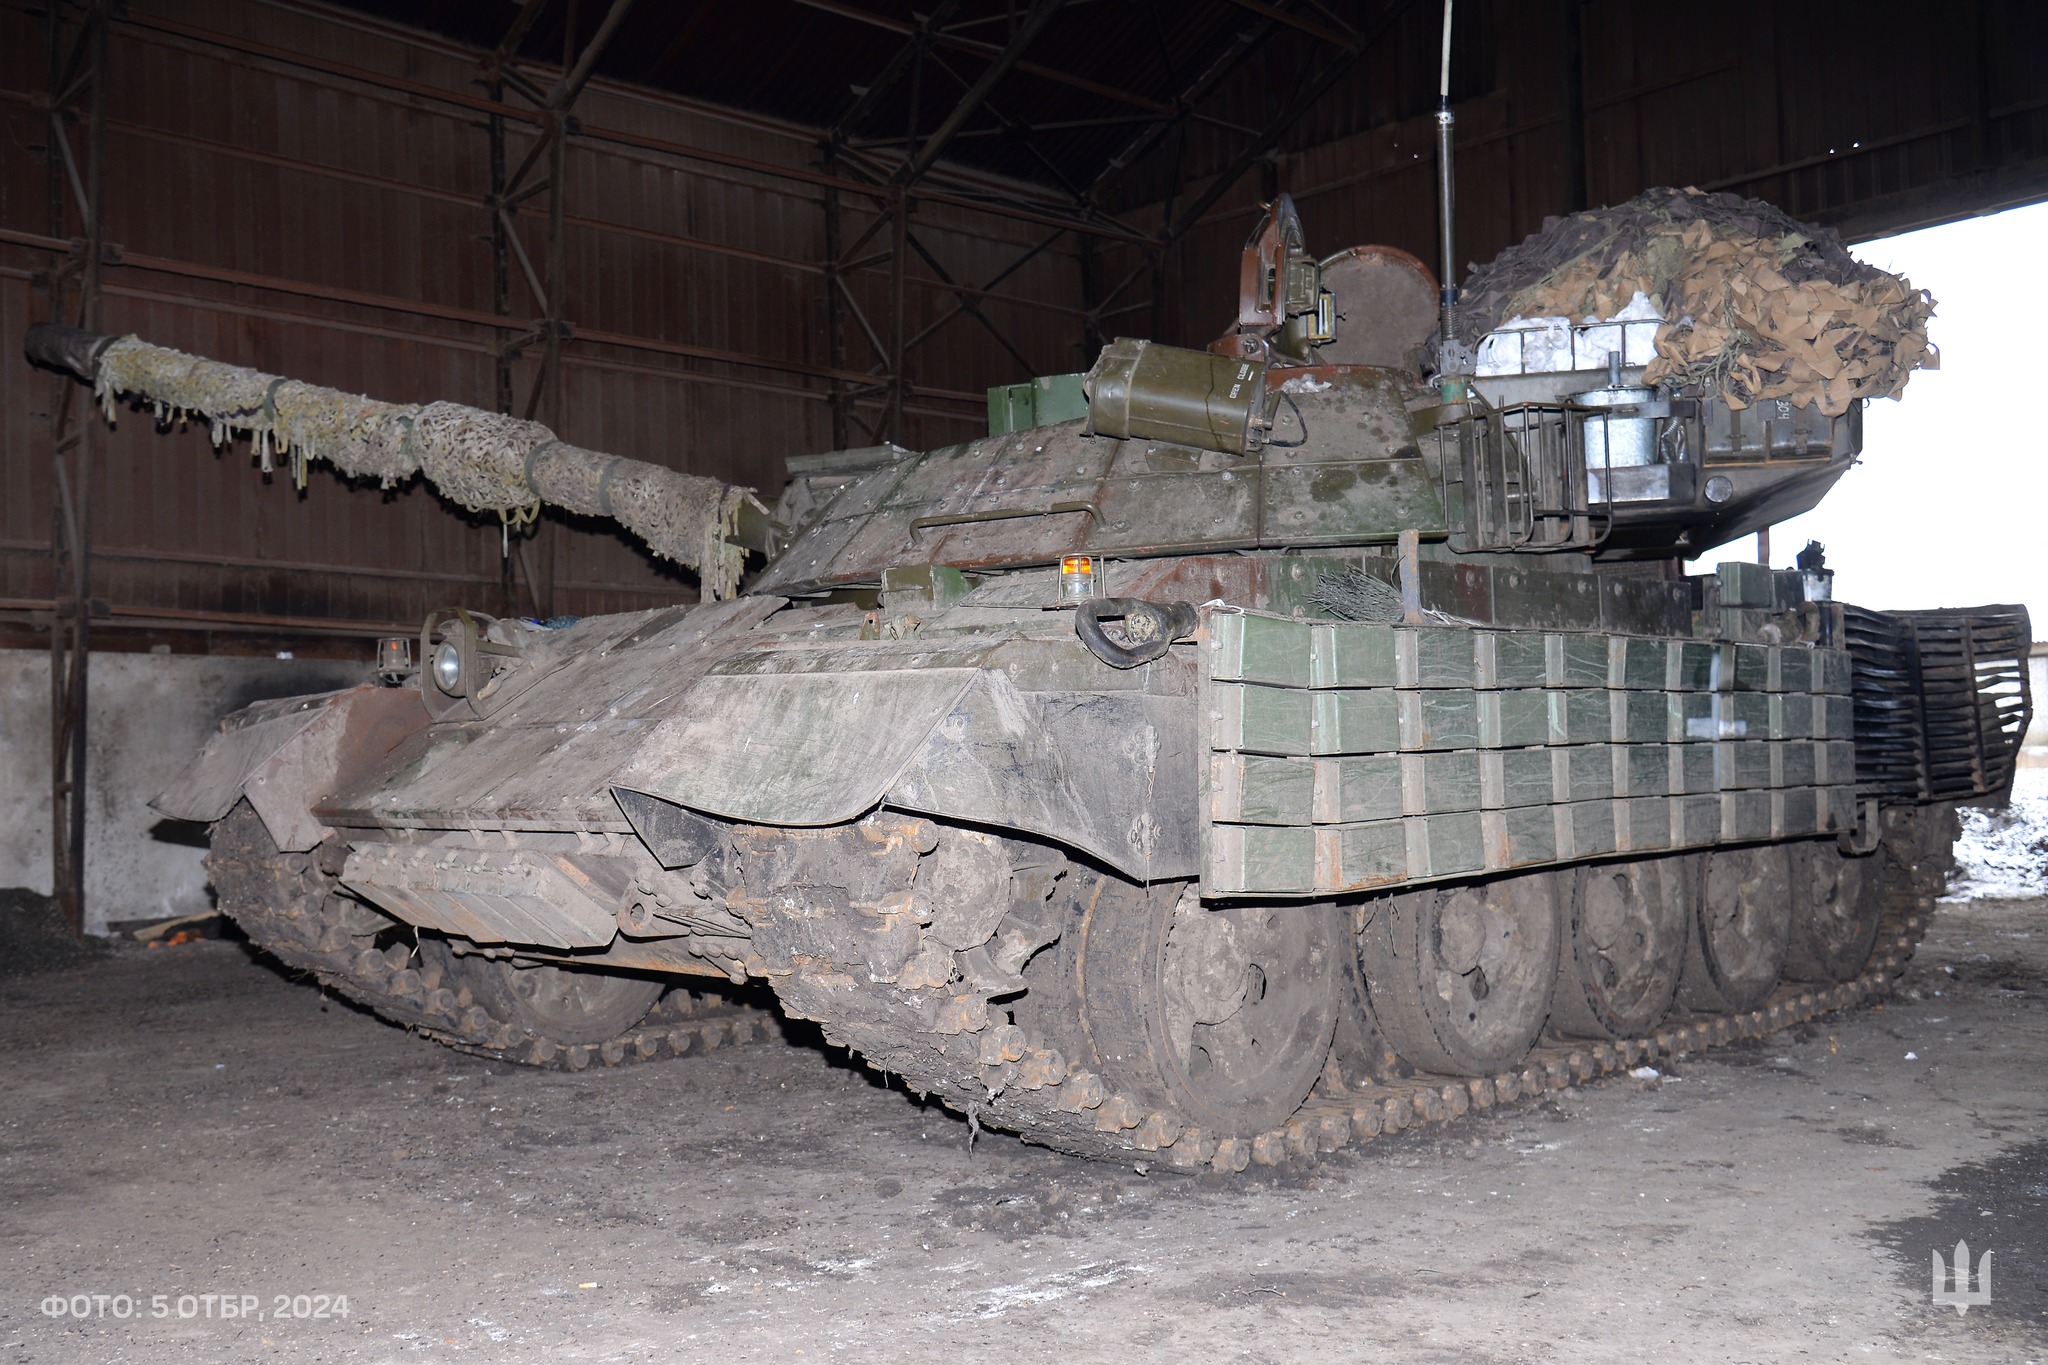 Slovenski tanki po dveh letih v Ukrajini končno našli svoj namen